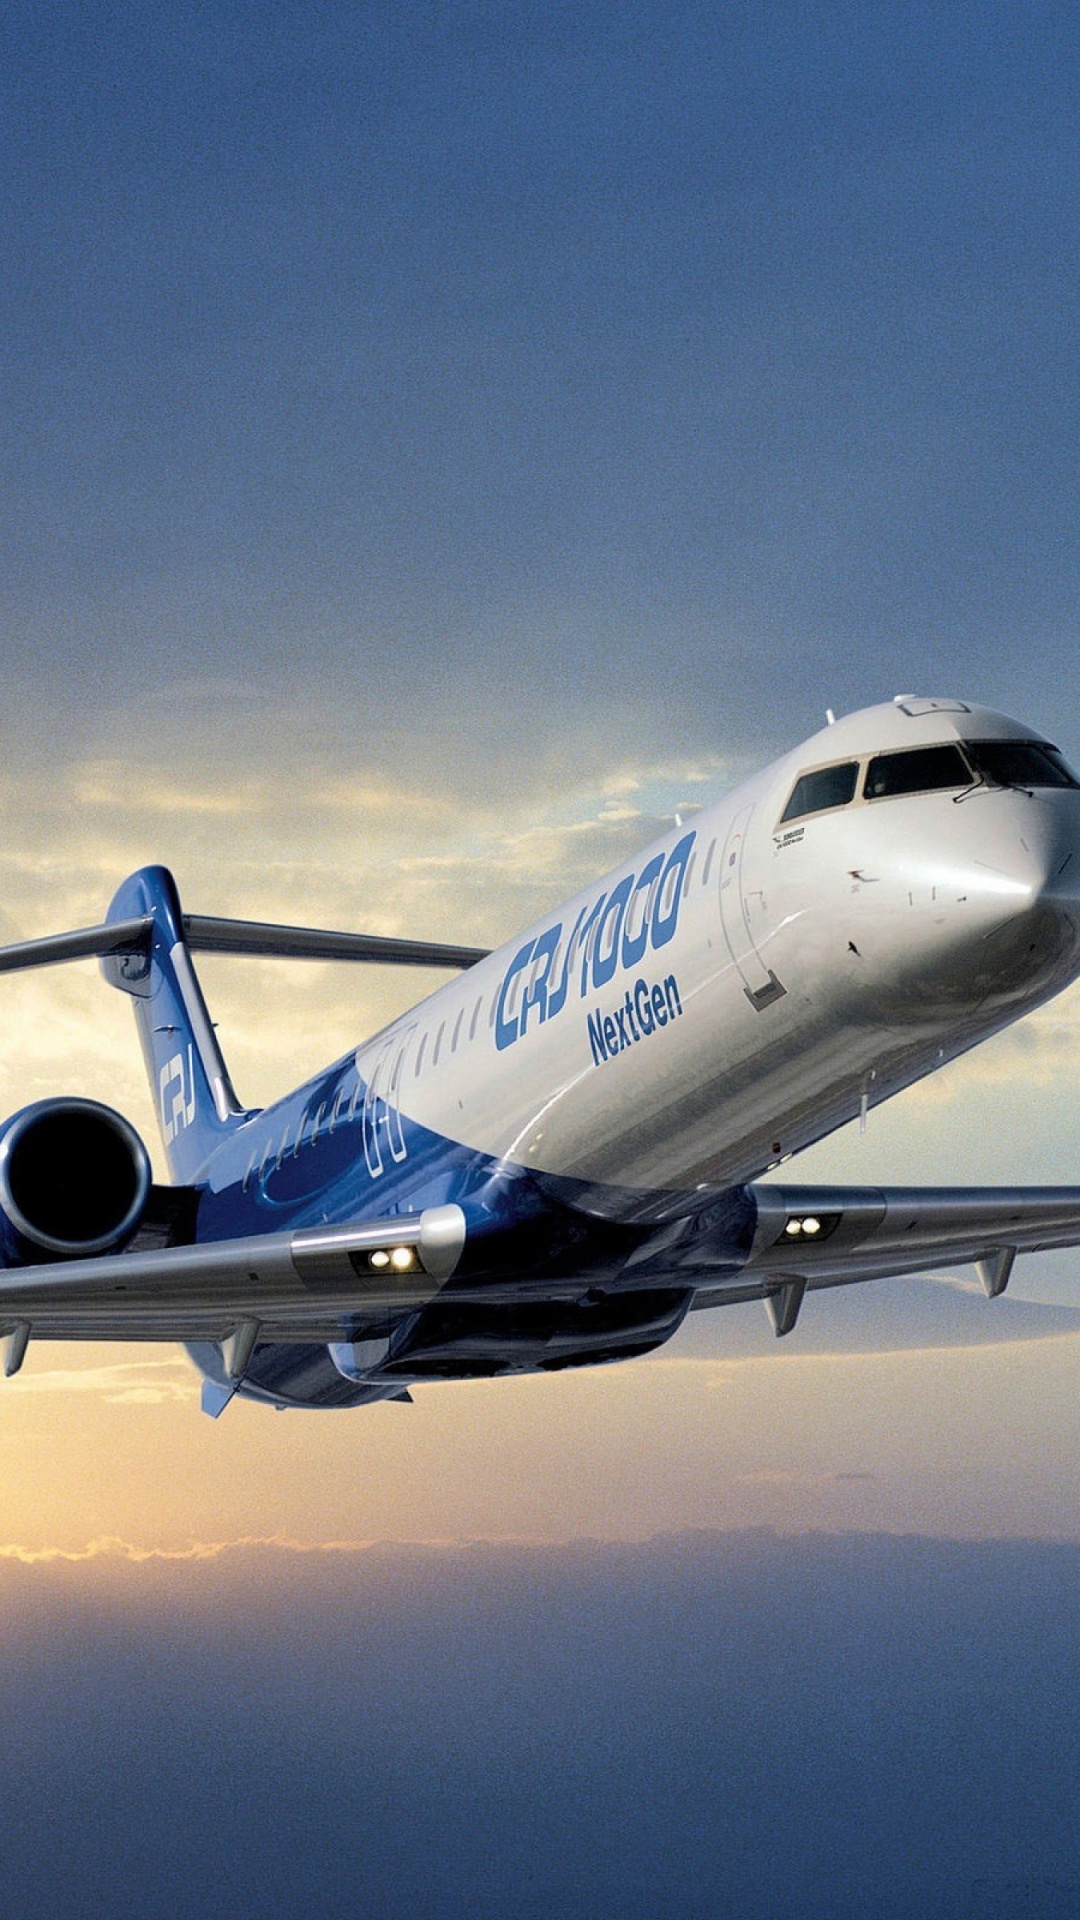 客机, 航空, 空中旅行, 航空公司, 航空航天工程 壁纸 1080x1920 允许